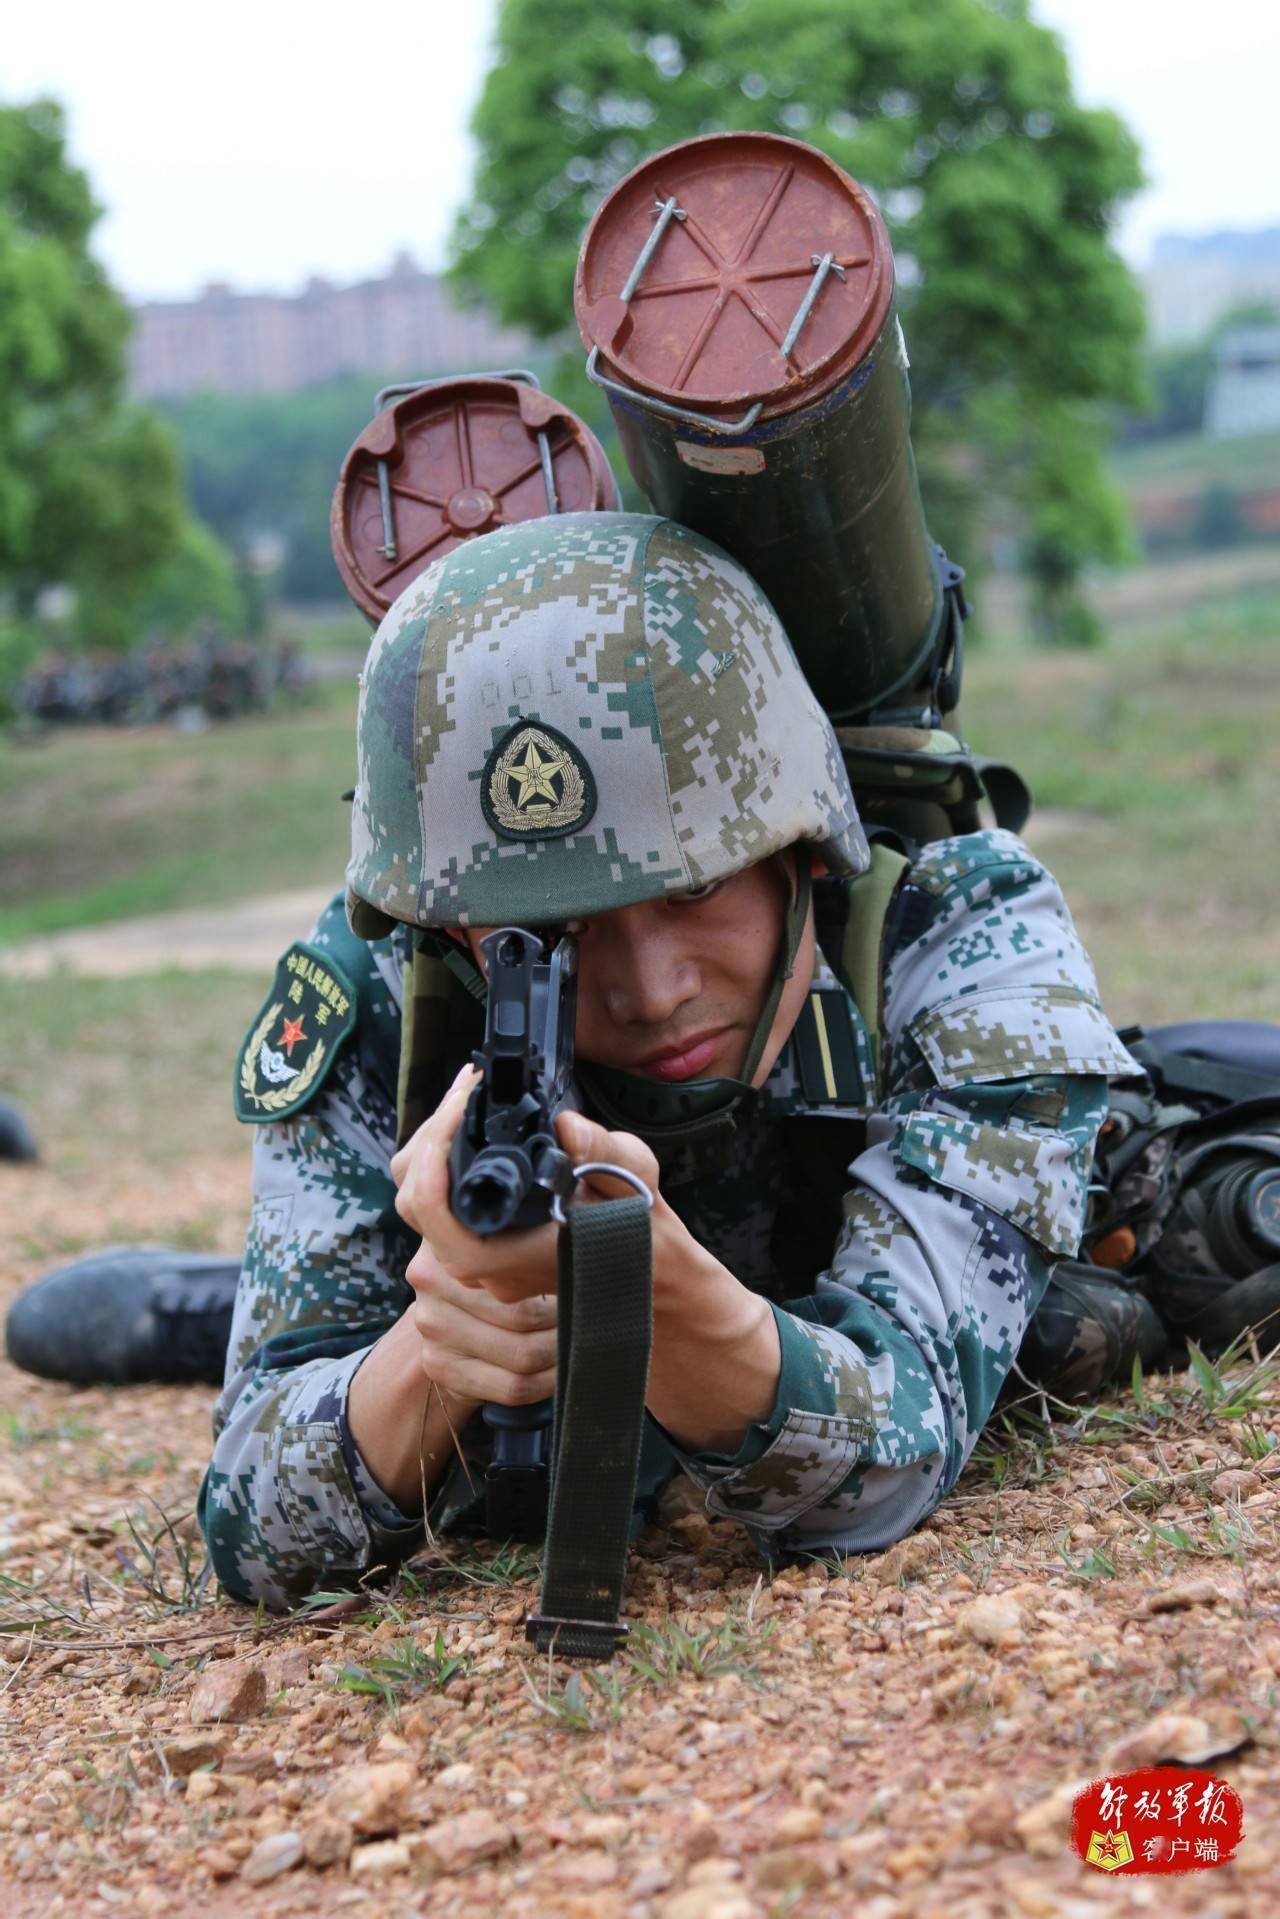 近日,陆军步兵学院某大队组织开展了一场实战化训练